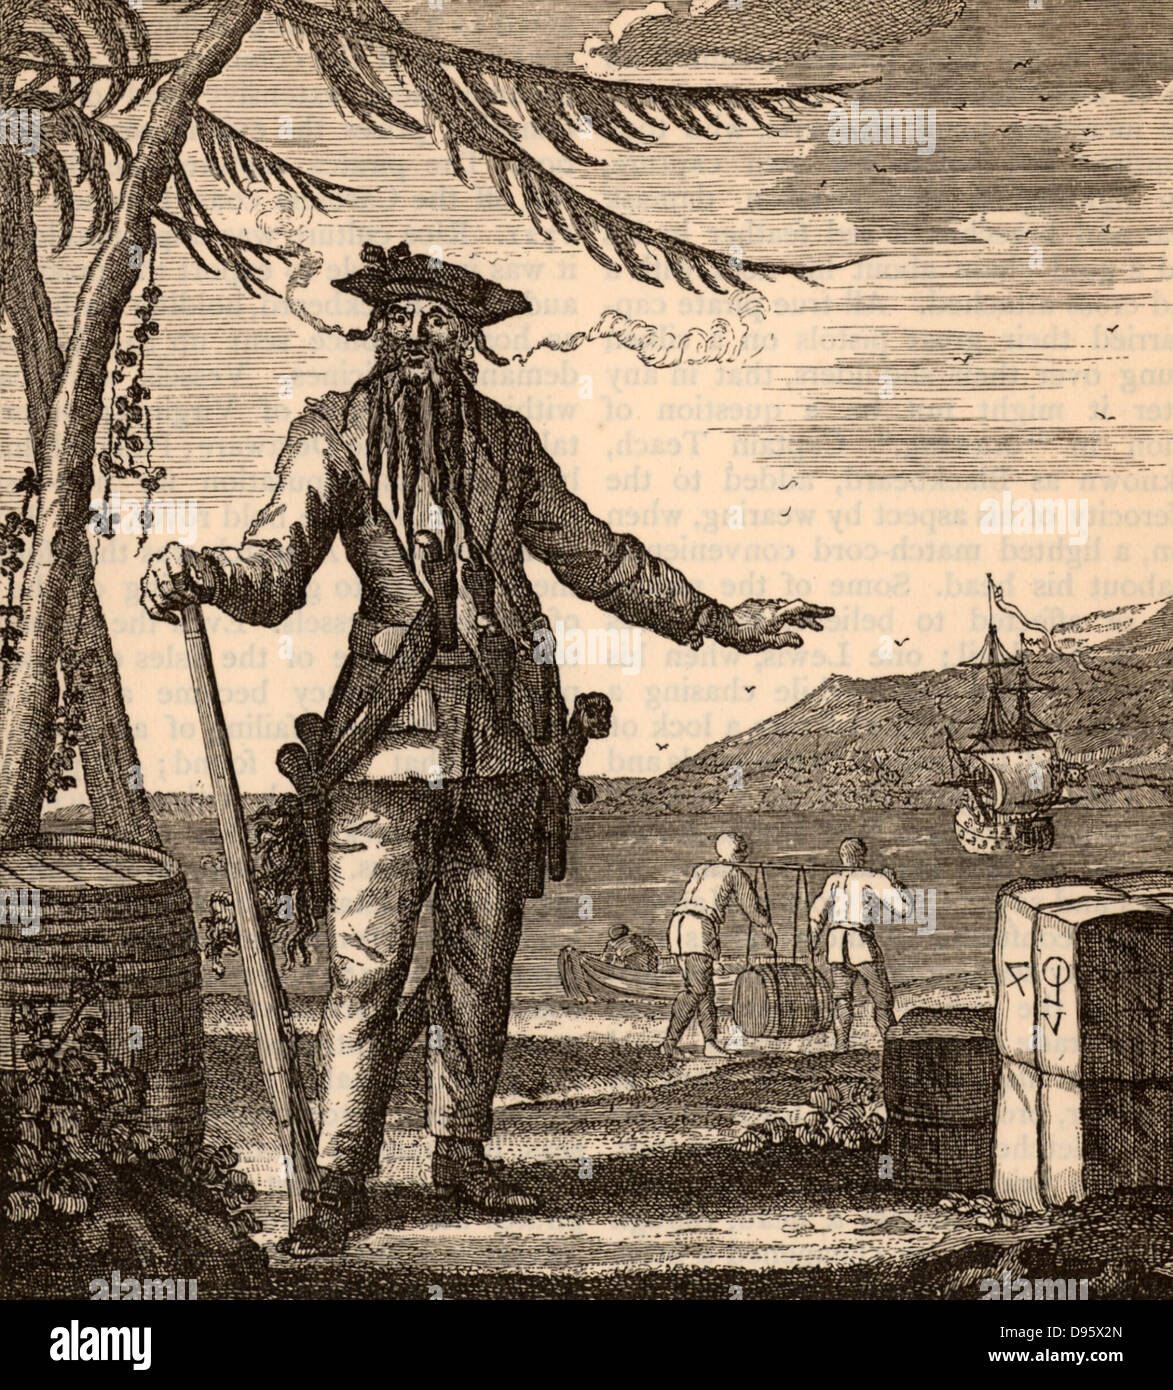 Blackbeard, der volkstümliche Name von Edward Teach (oder Stroh oder Drummond - 1680-1718) berühmt-berüchtigten englischen Piraten, die Karibik Meer zu einer Herrschaft des Terrors von 1716 bis 1718 ausgesetzt. Gravur. Stockfoto